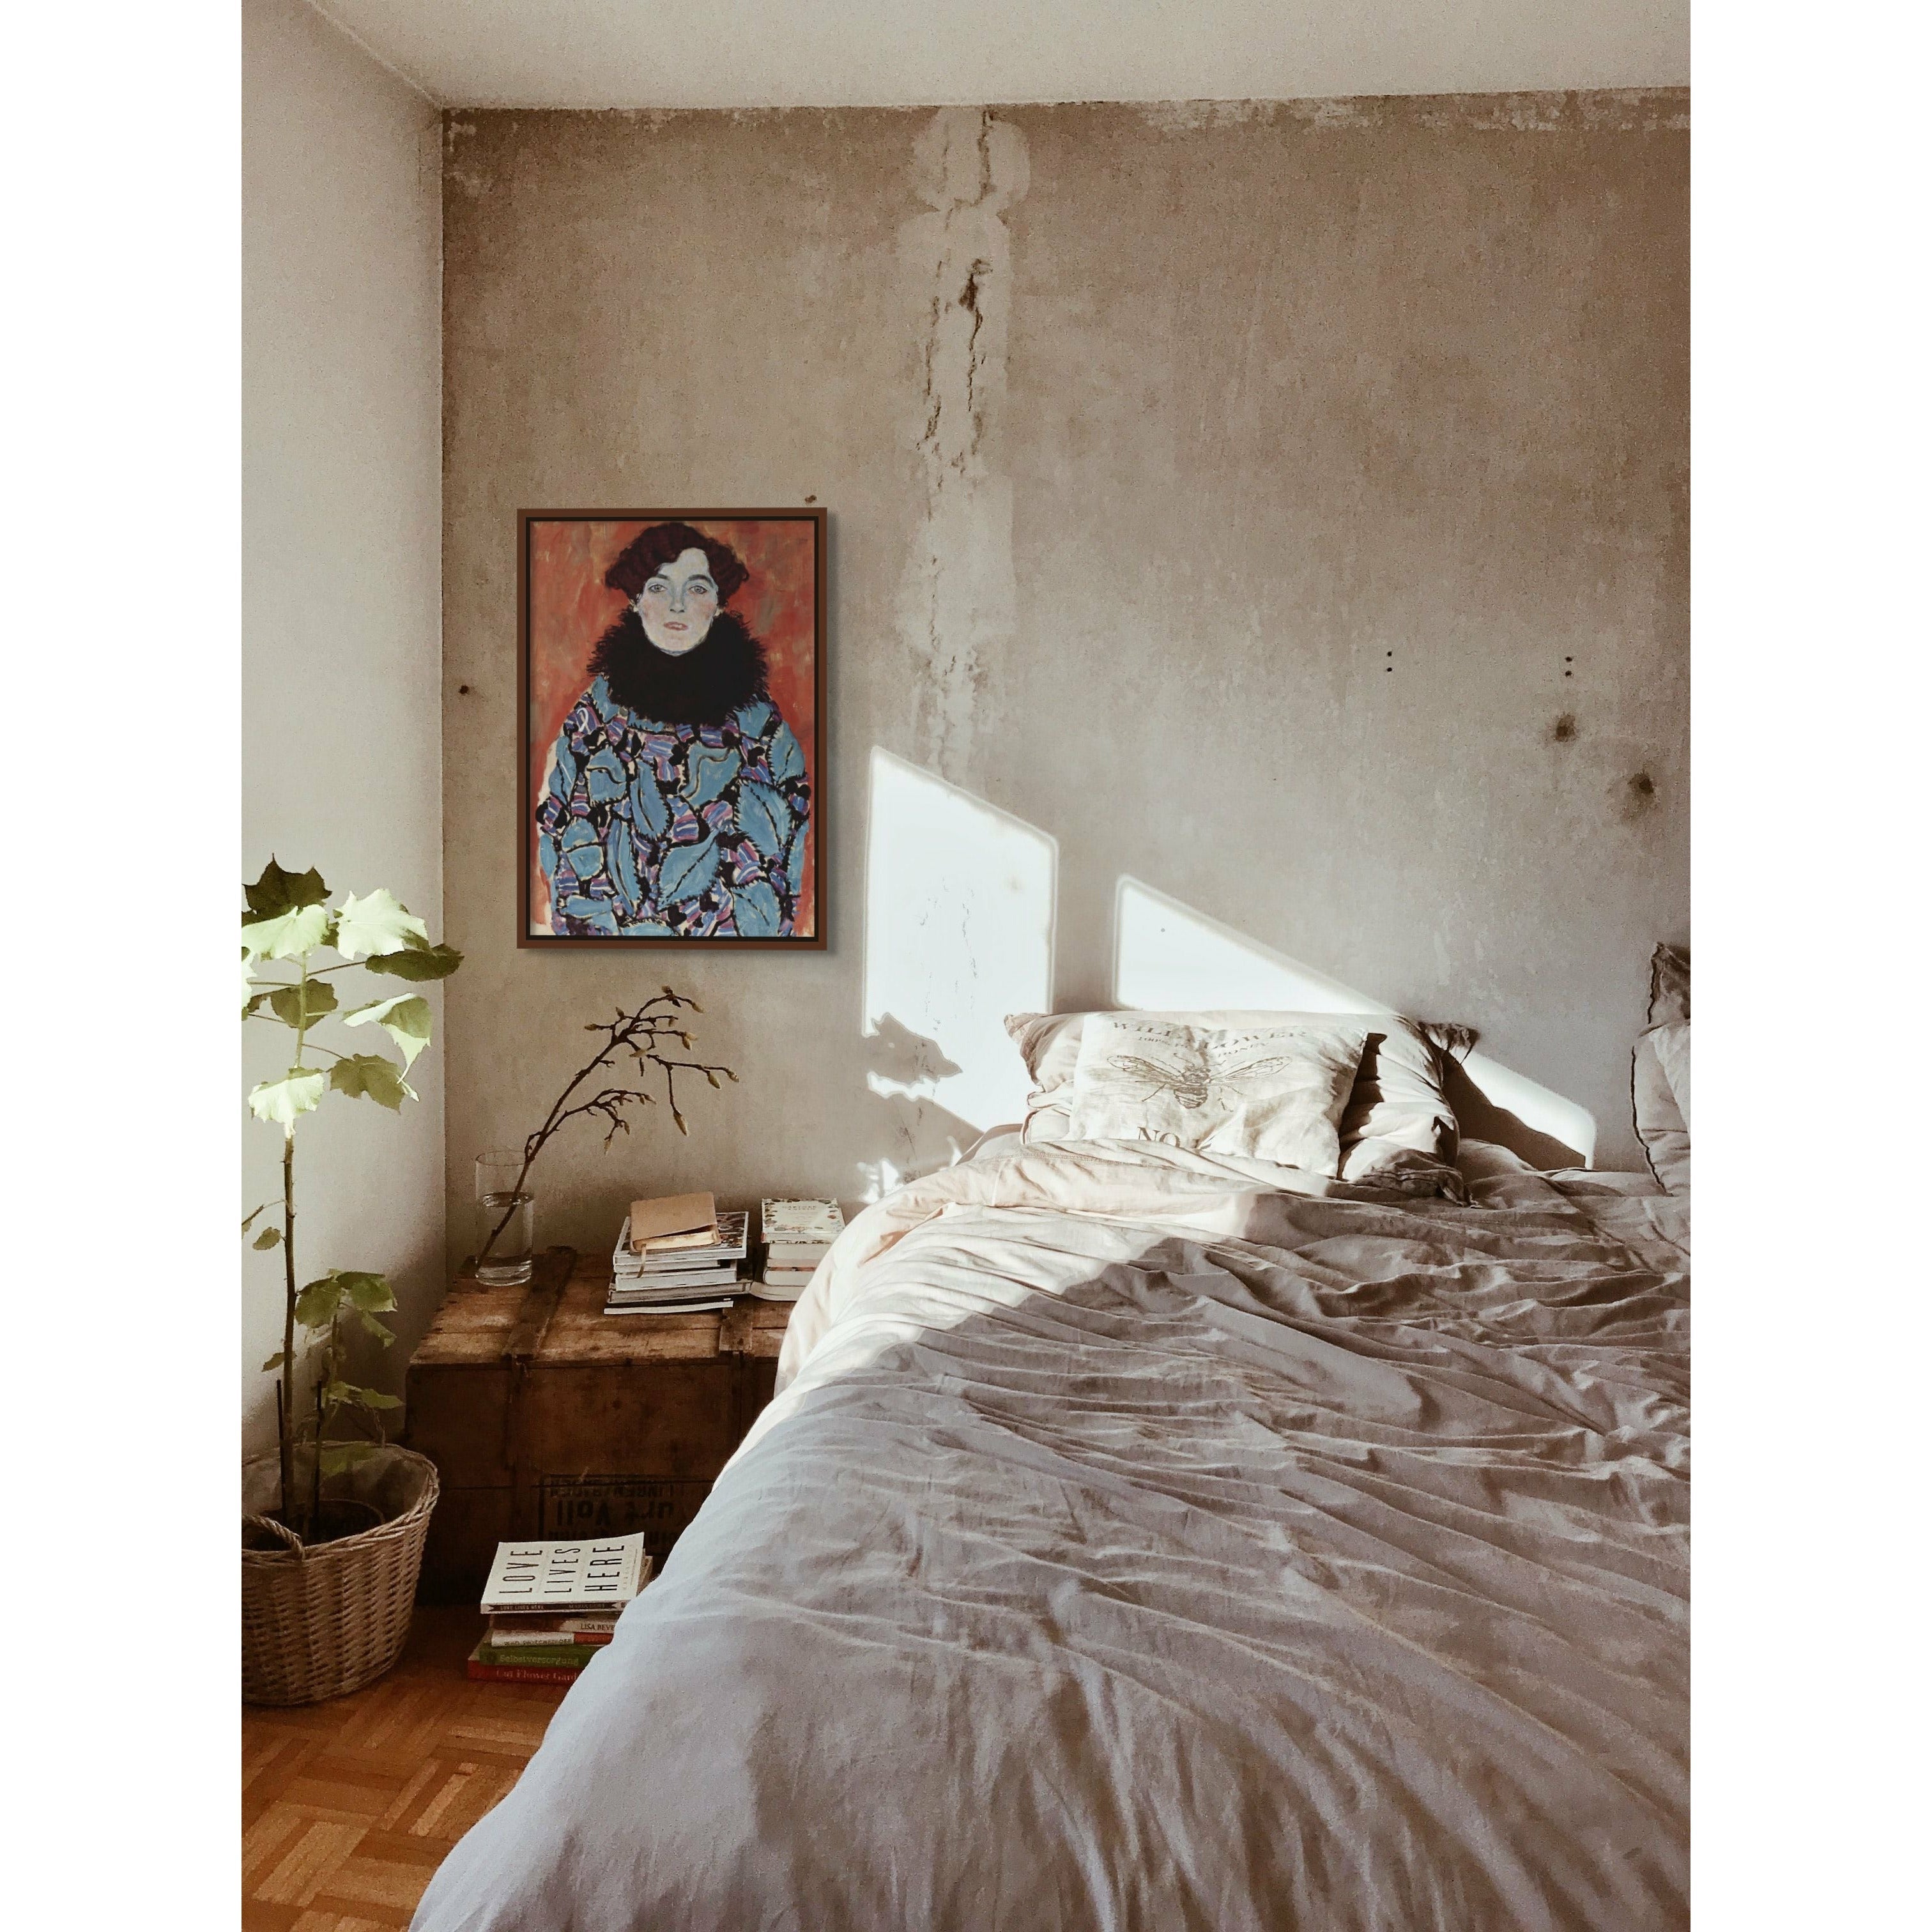 Get Portrait of Johanna Staude by Gustav Klimt